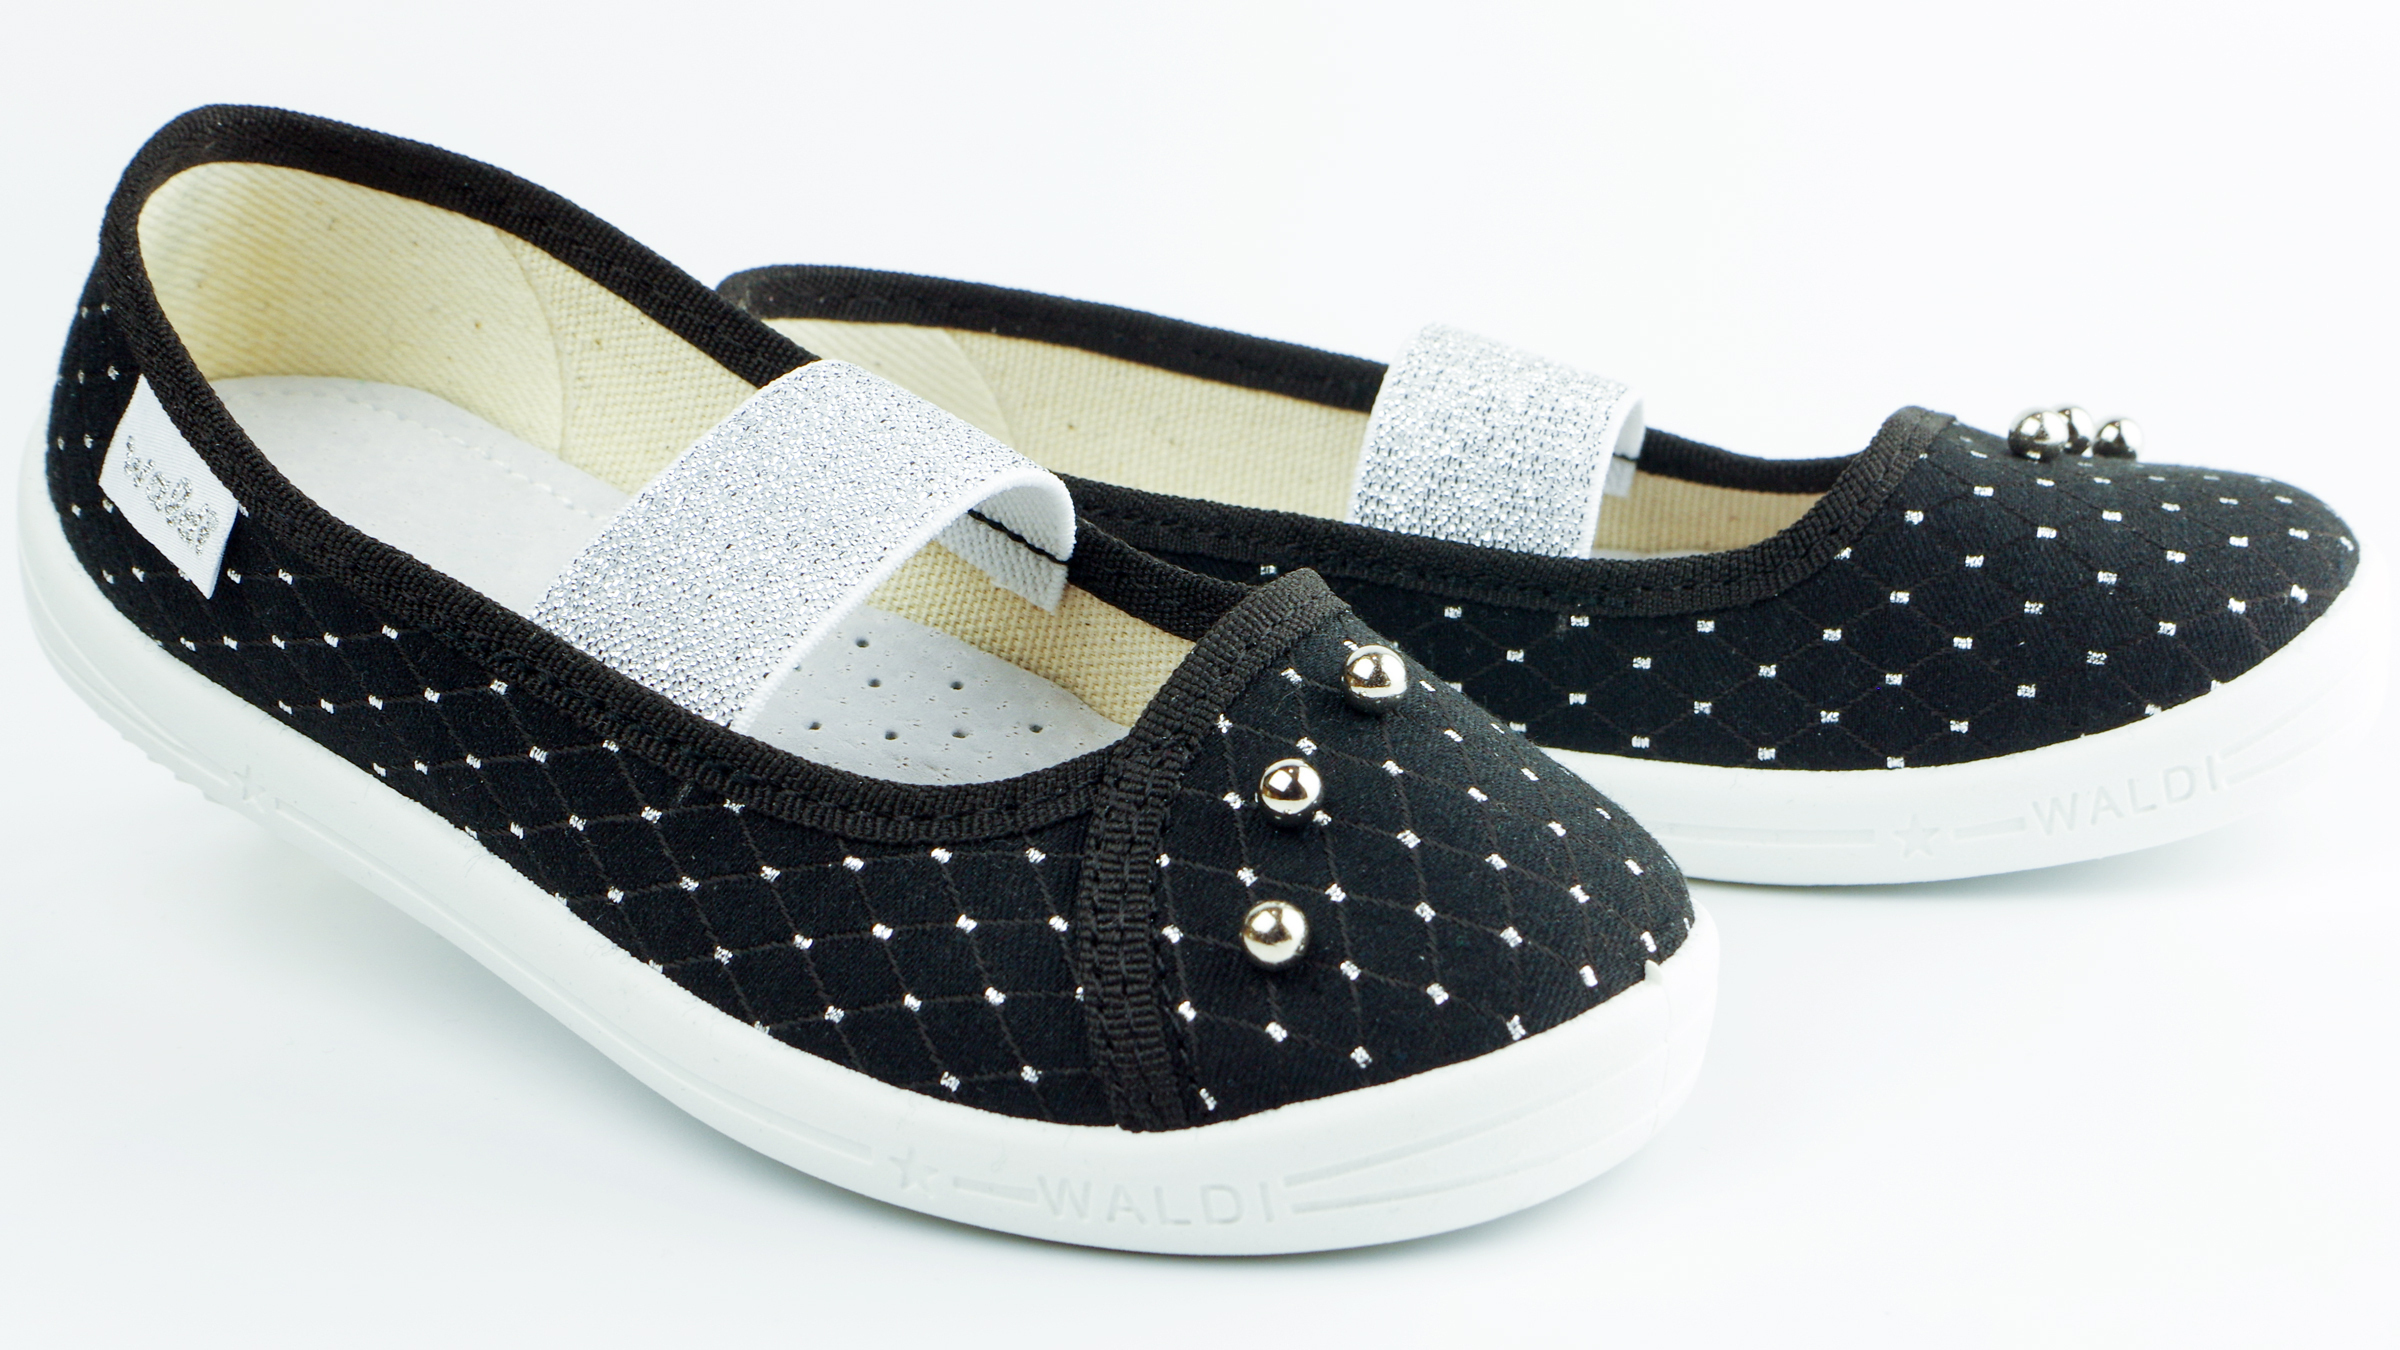 Текстильная обувь для девочек Тапочки Жемчужина (2129) цвет Черный 27-34 размеры – Sole Kids. Фото 3